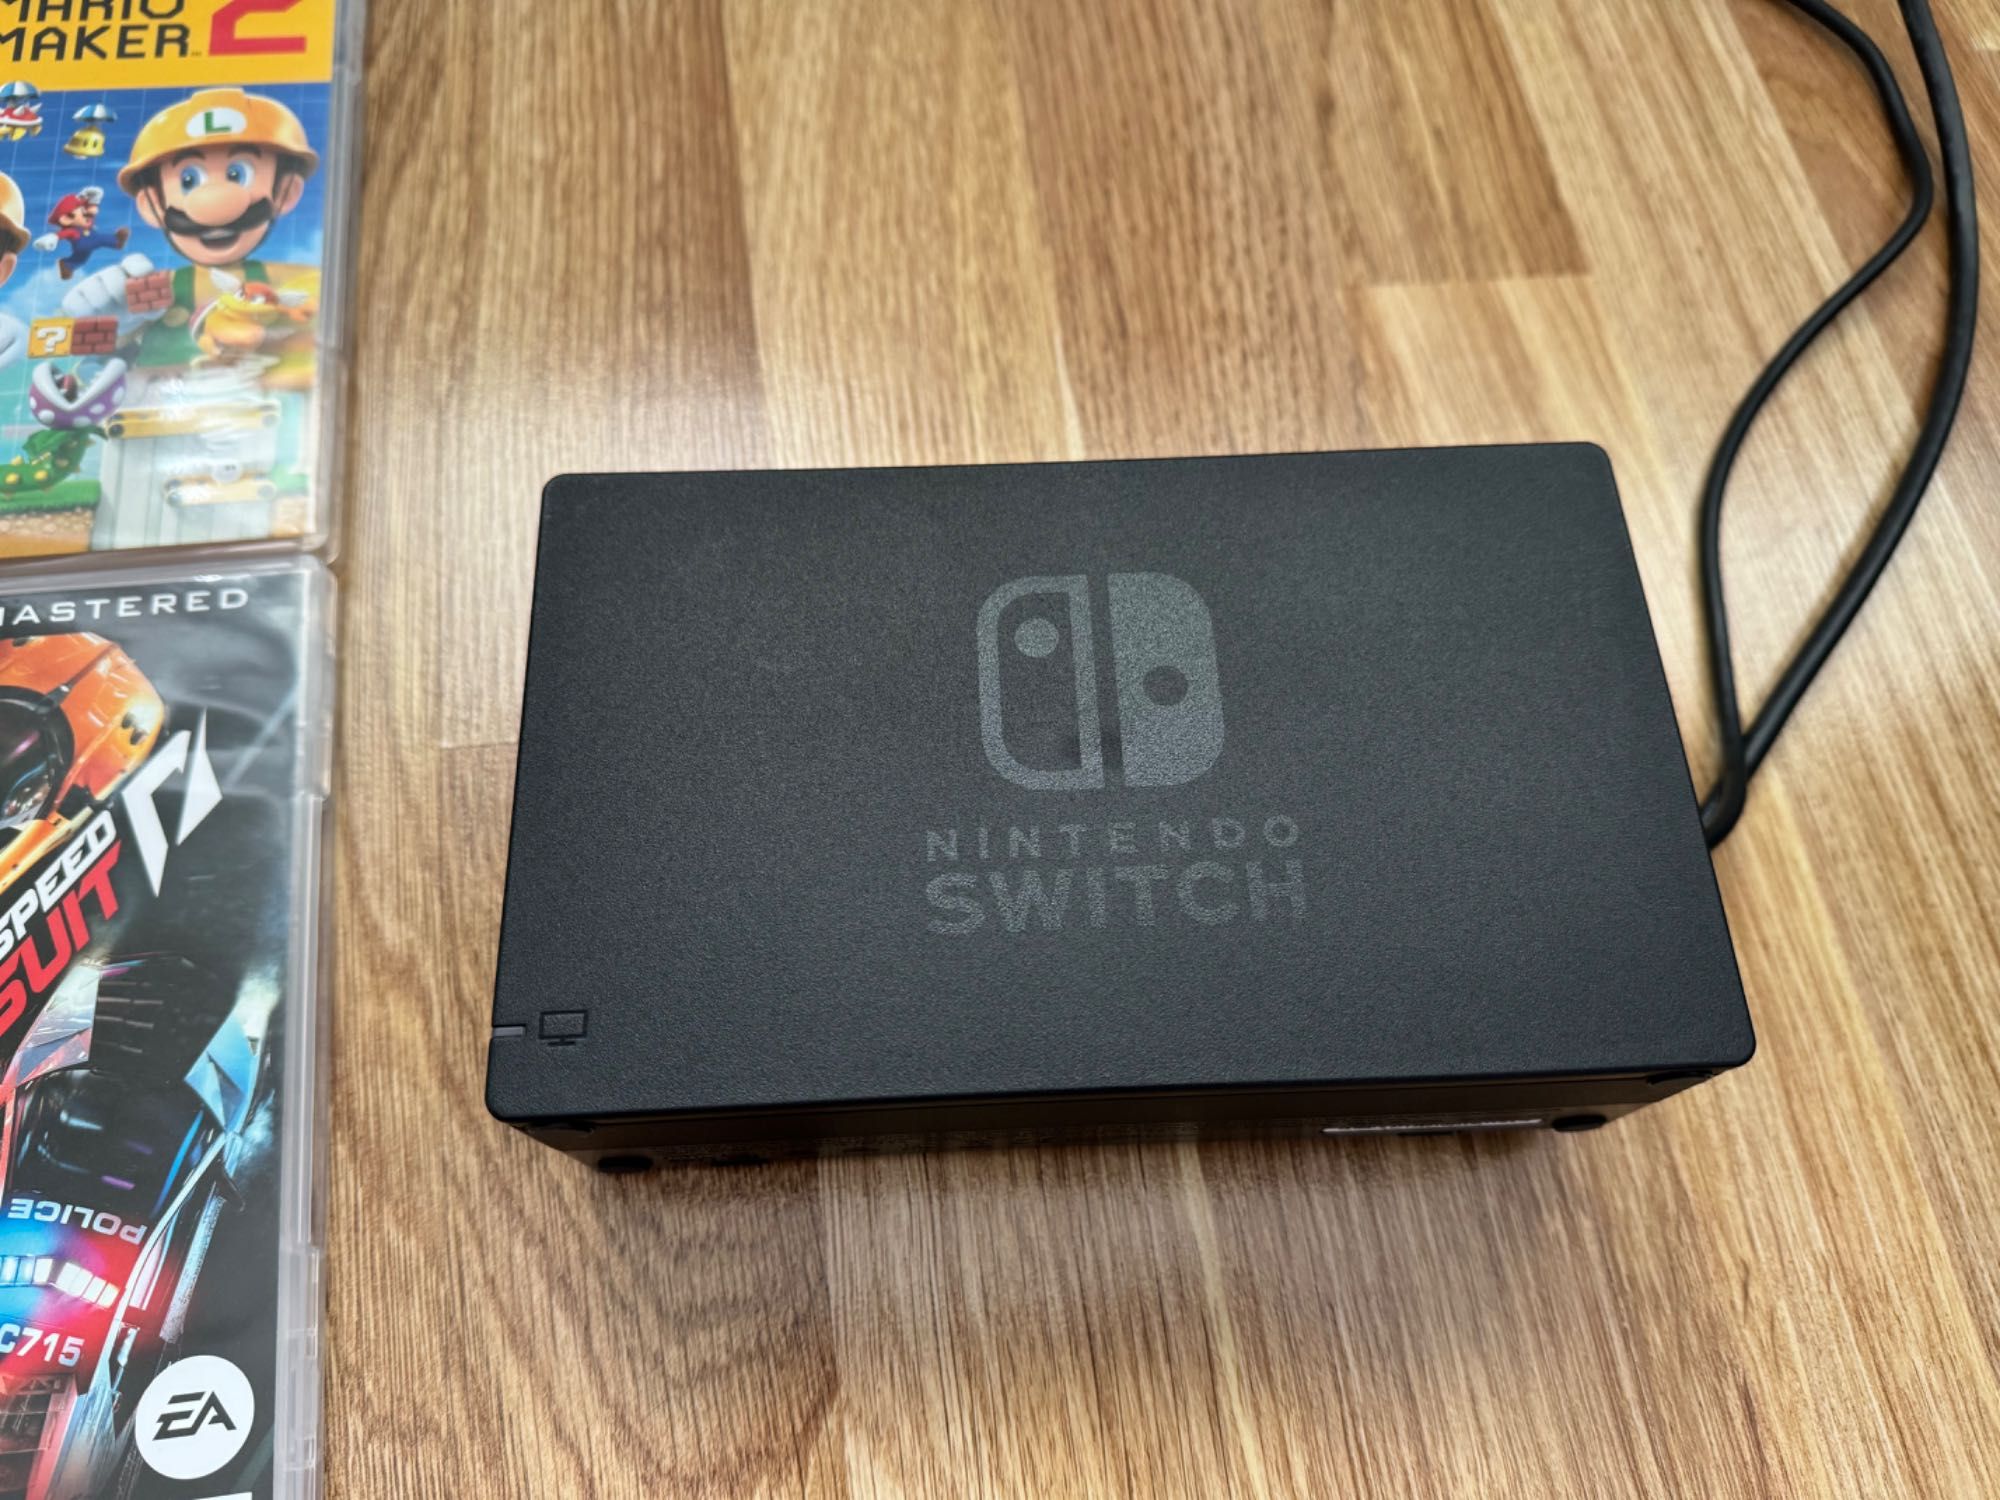 Consolă Nintendo switch cu 8 jocuri originale.